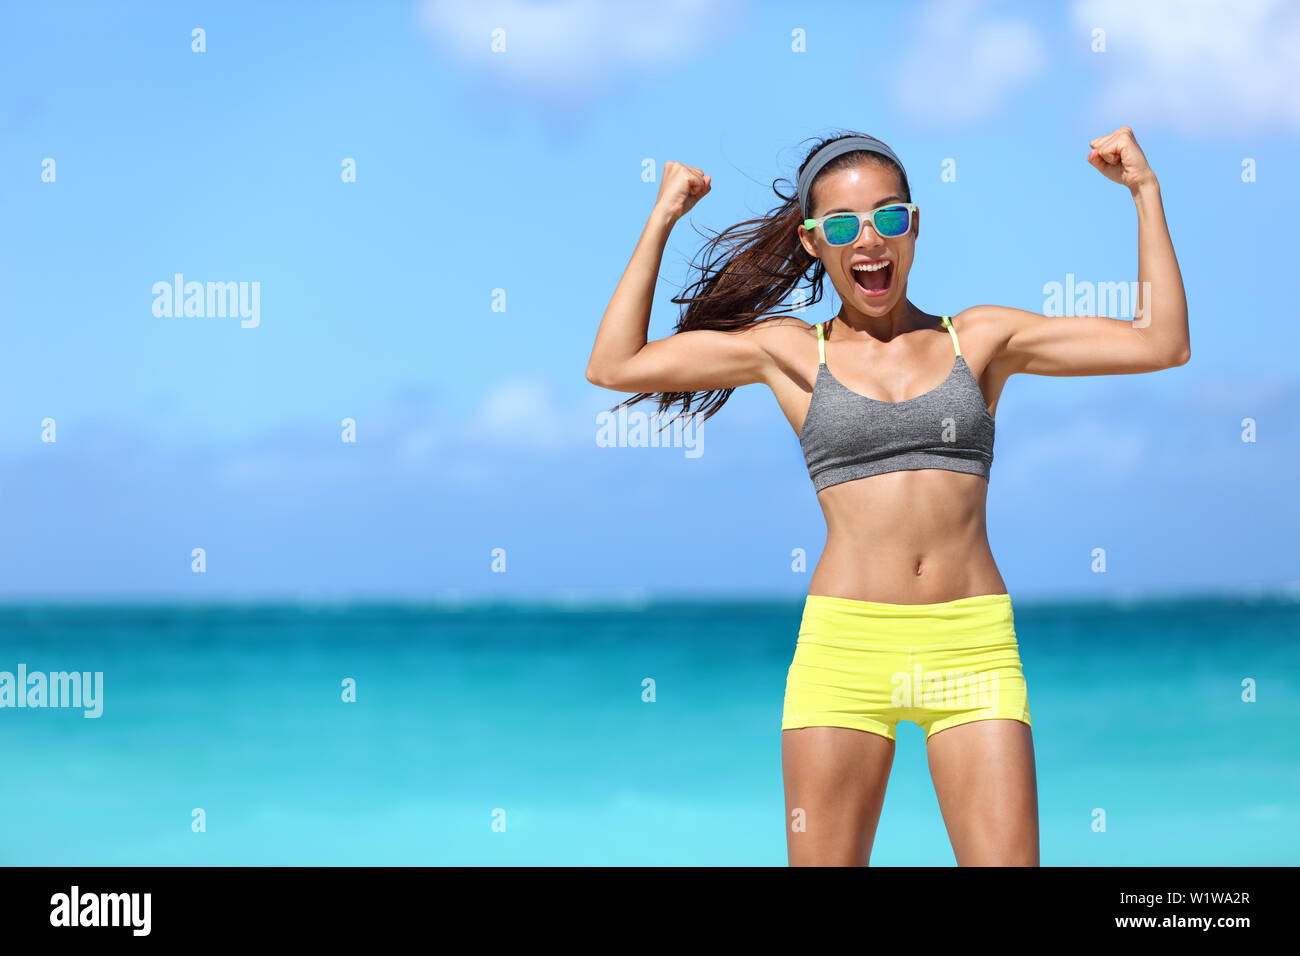 Fuerte fitness mujer divertida en neón azul caminante gafas de sol en la playa mostrando muscular bíceps flexión de los brazos para la diversión. Colocar chica en ropa deportiva tras la ejecución de ejercicios de entrenamiento de fuerza ganando en potencia. Foto de stock